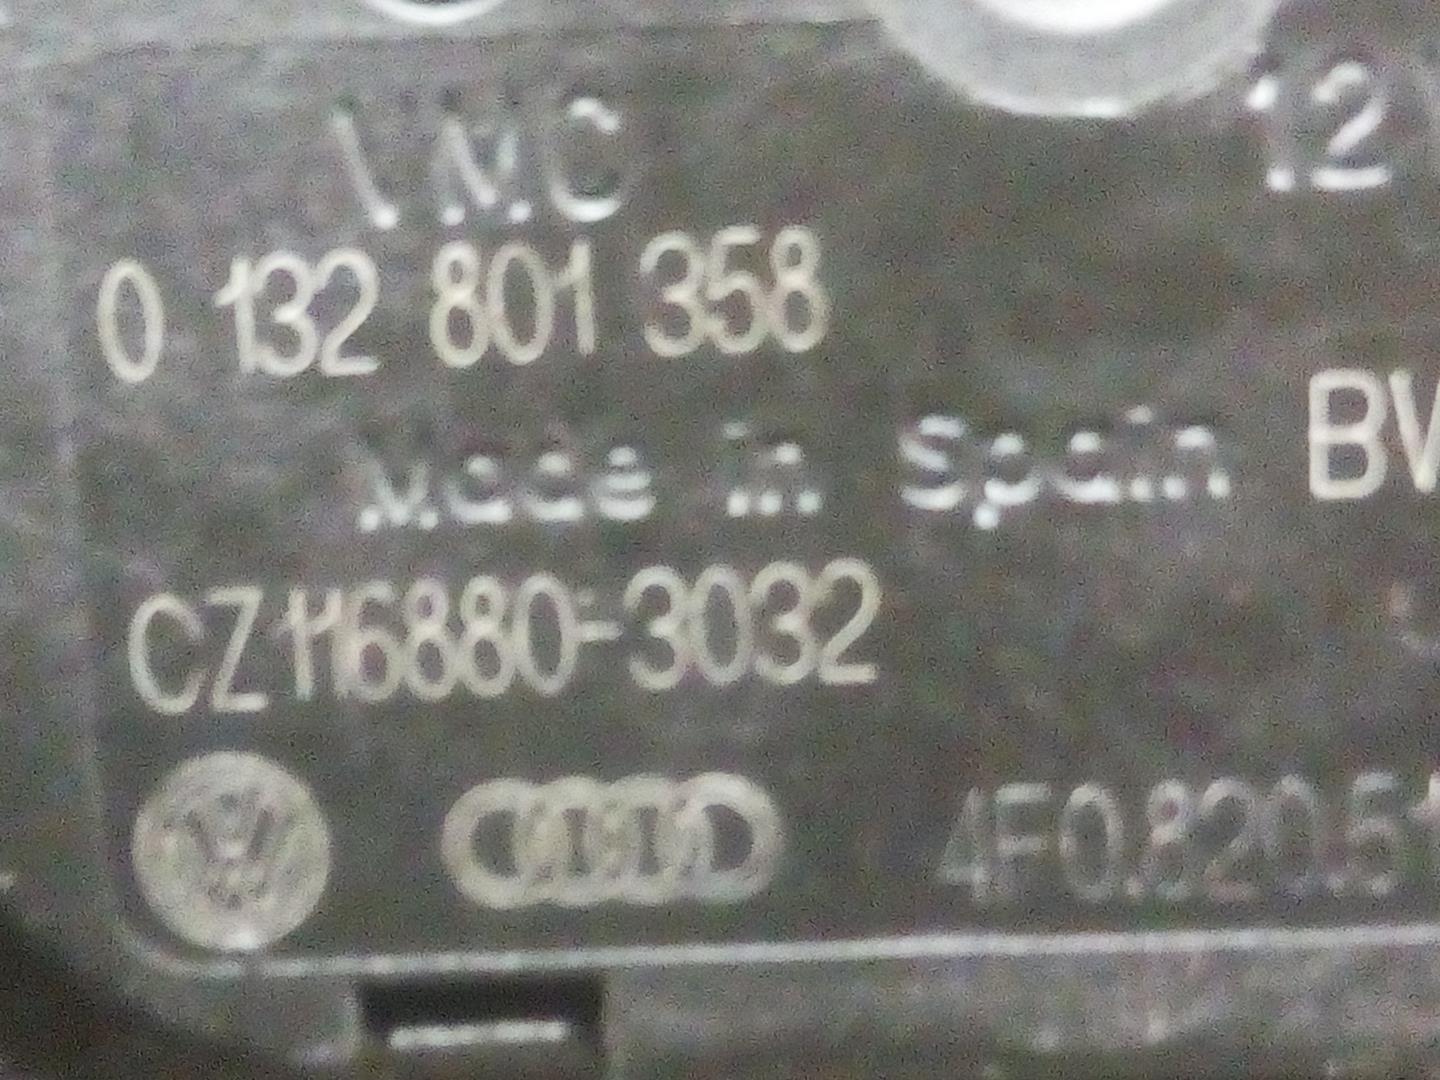 AUDI A6 C6/4F (2004-2011) Нагревательный вентиляторный моторчик салона 0132801358, CZ1168803032 18588109